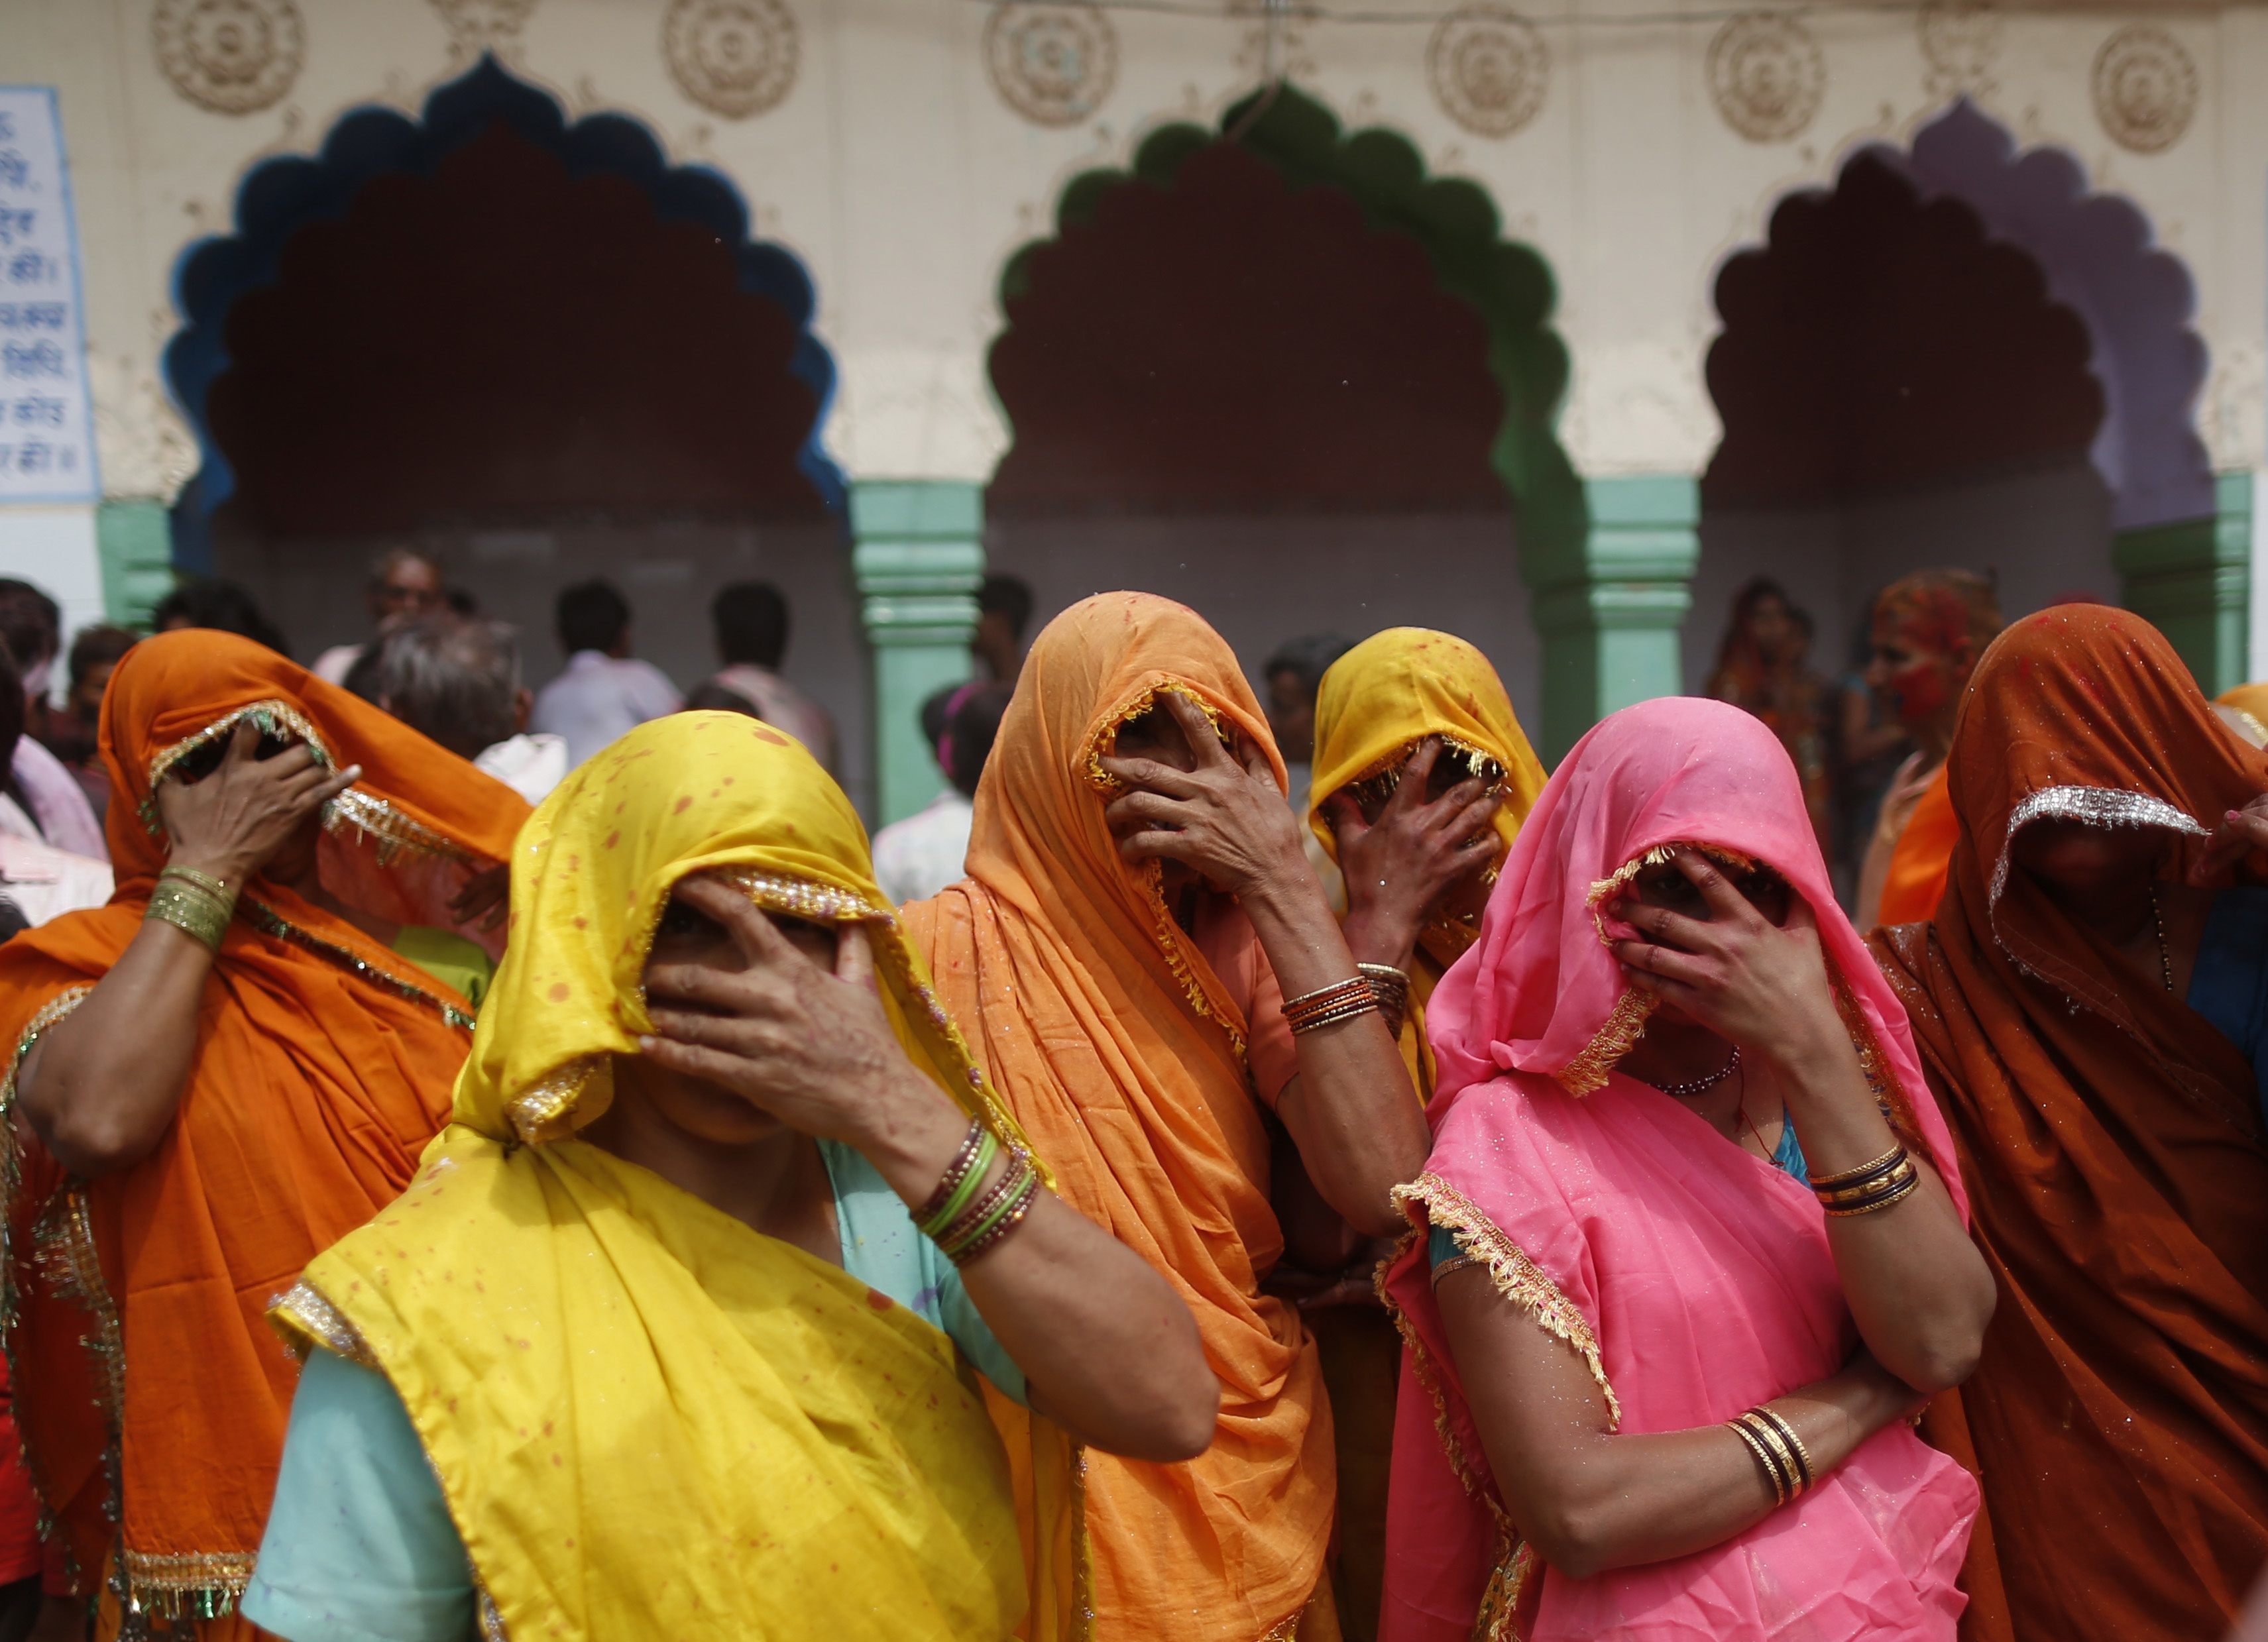 Μειώθηκε ο αριθμός των τουριστριών στην Ινδία, μετά τις σεξουαλικές επιθέσεις